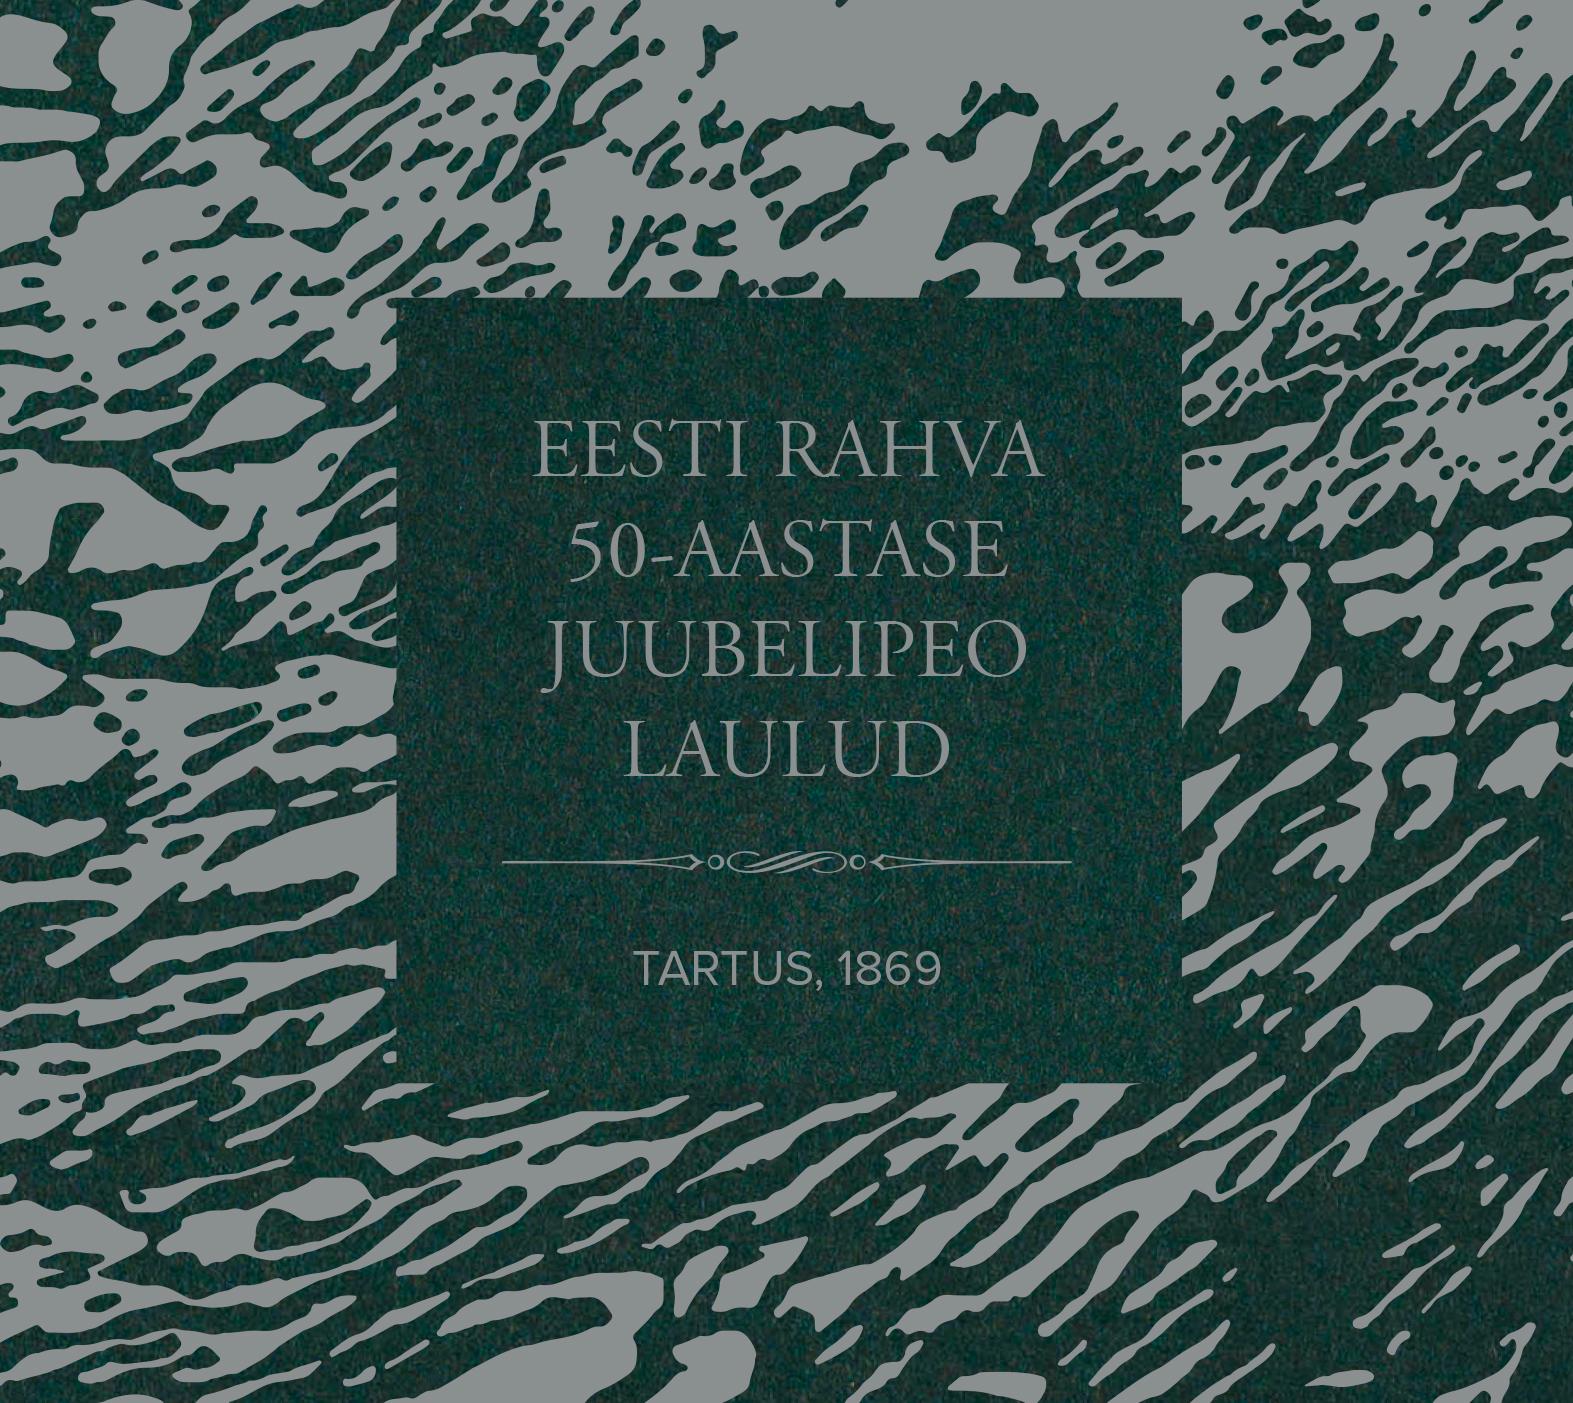 EESTI RAHVA 50-AASTASE JUUBELIPEO LAULUD (2020) CD